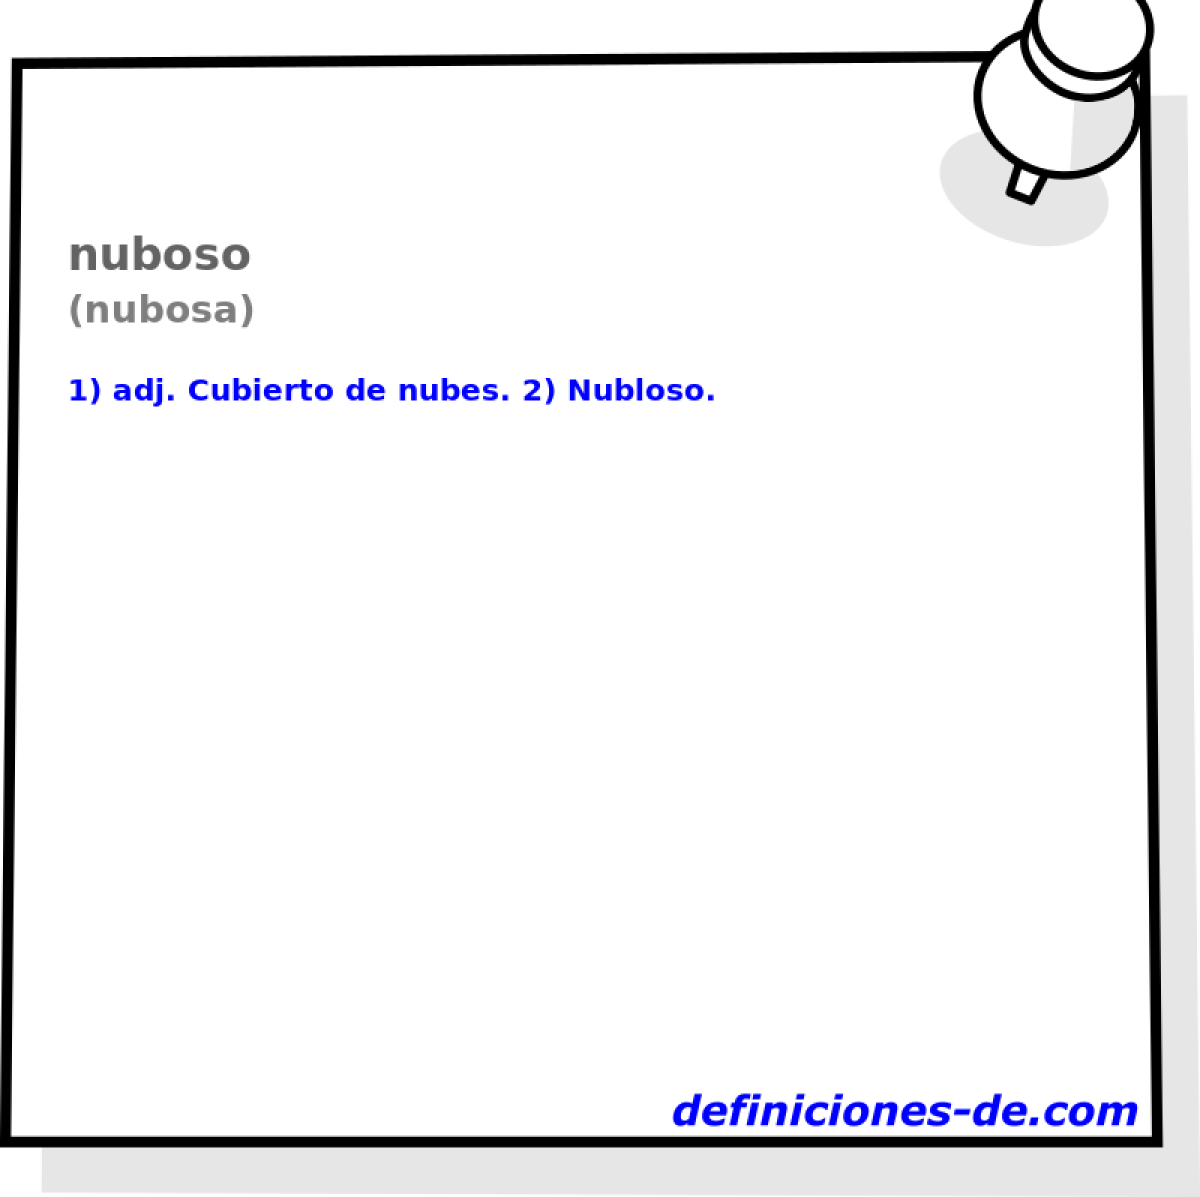 nuboso (nubosa)